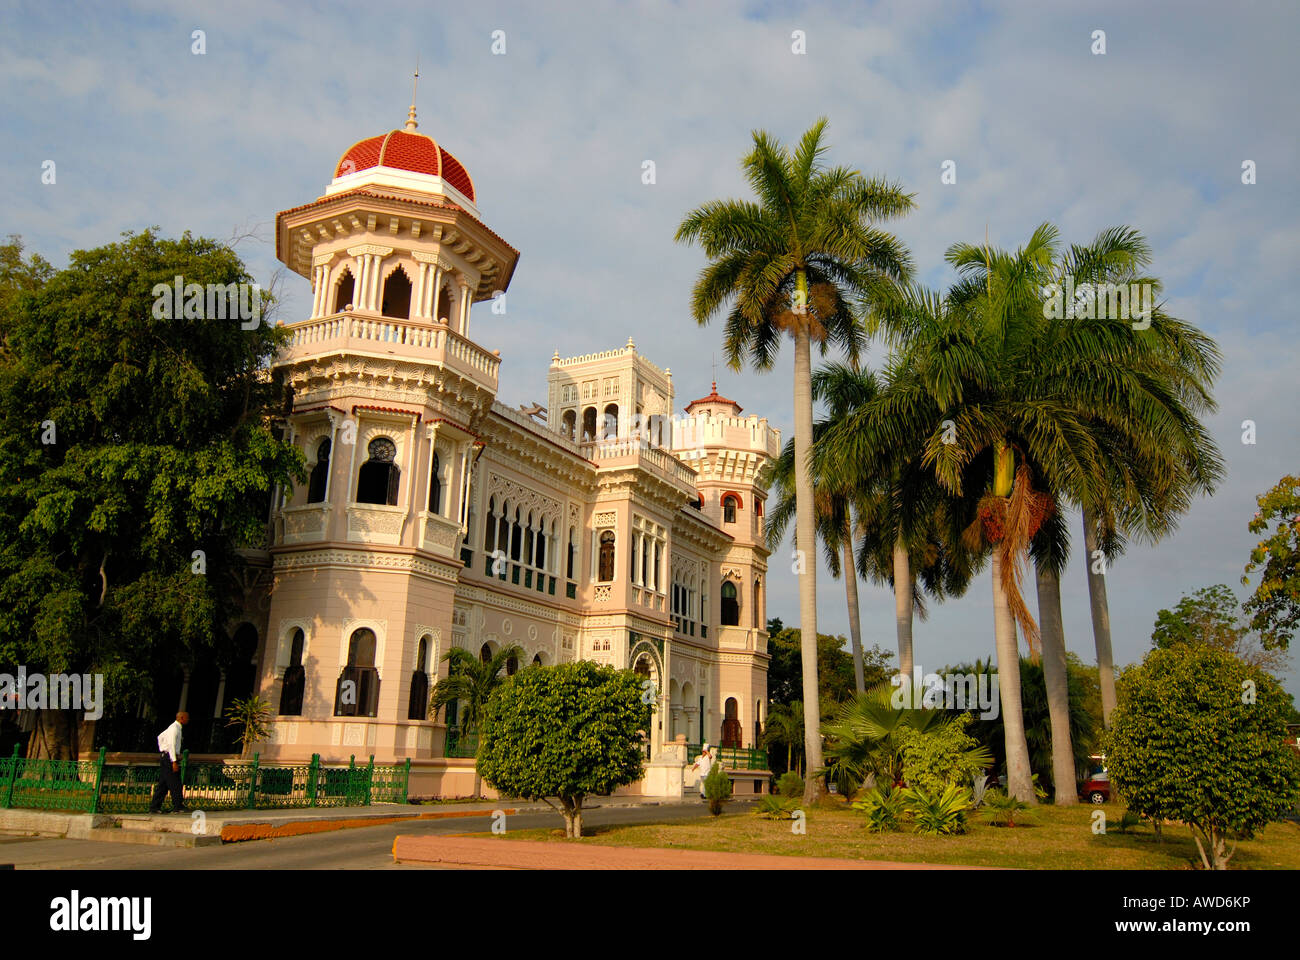 L'architecture coloniale cubaine, palmiers royaux (Roystonea regia) croissant autour d'une villa mauresque à Cienfuegos, Cuba, les Caraïbes, l'Ameri Banque D'Images